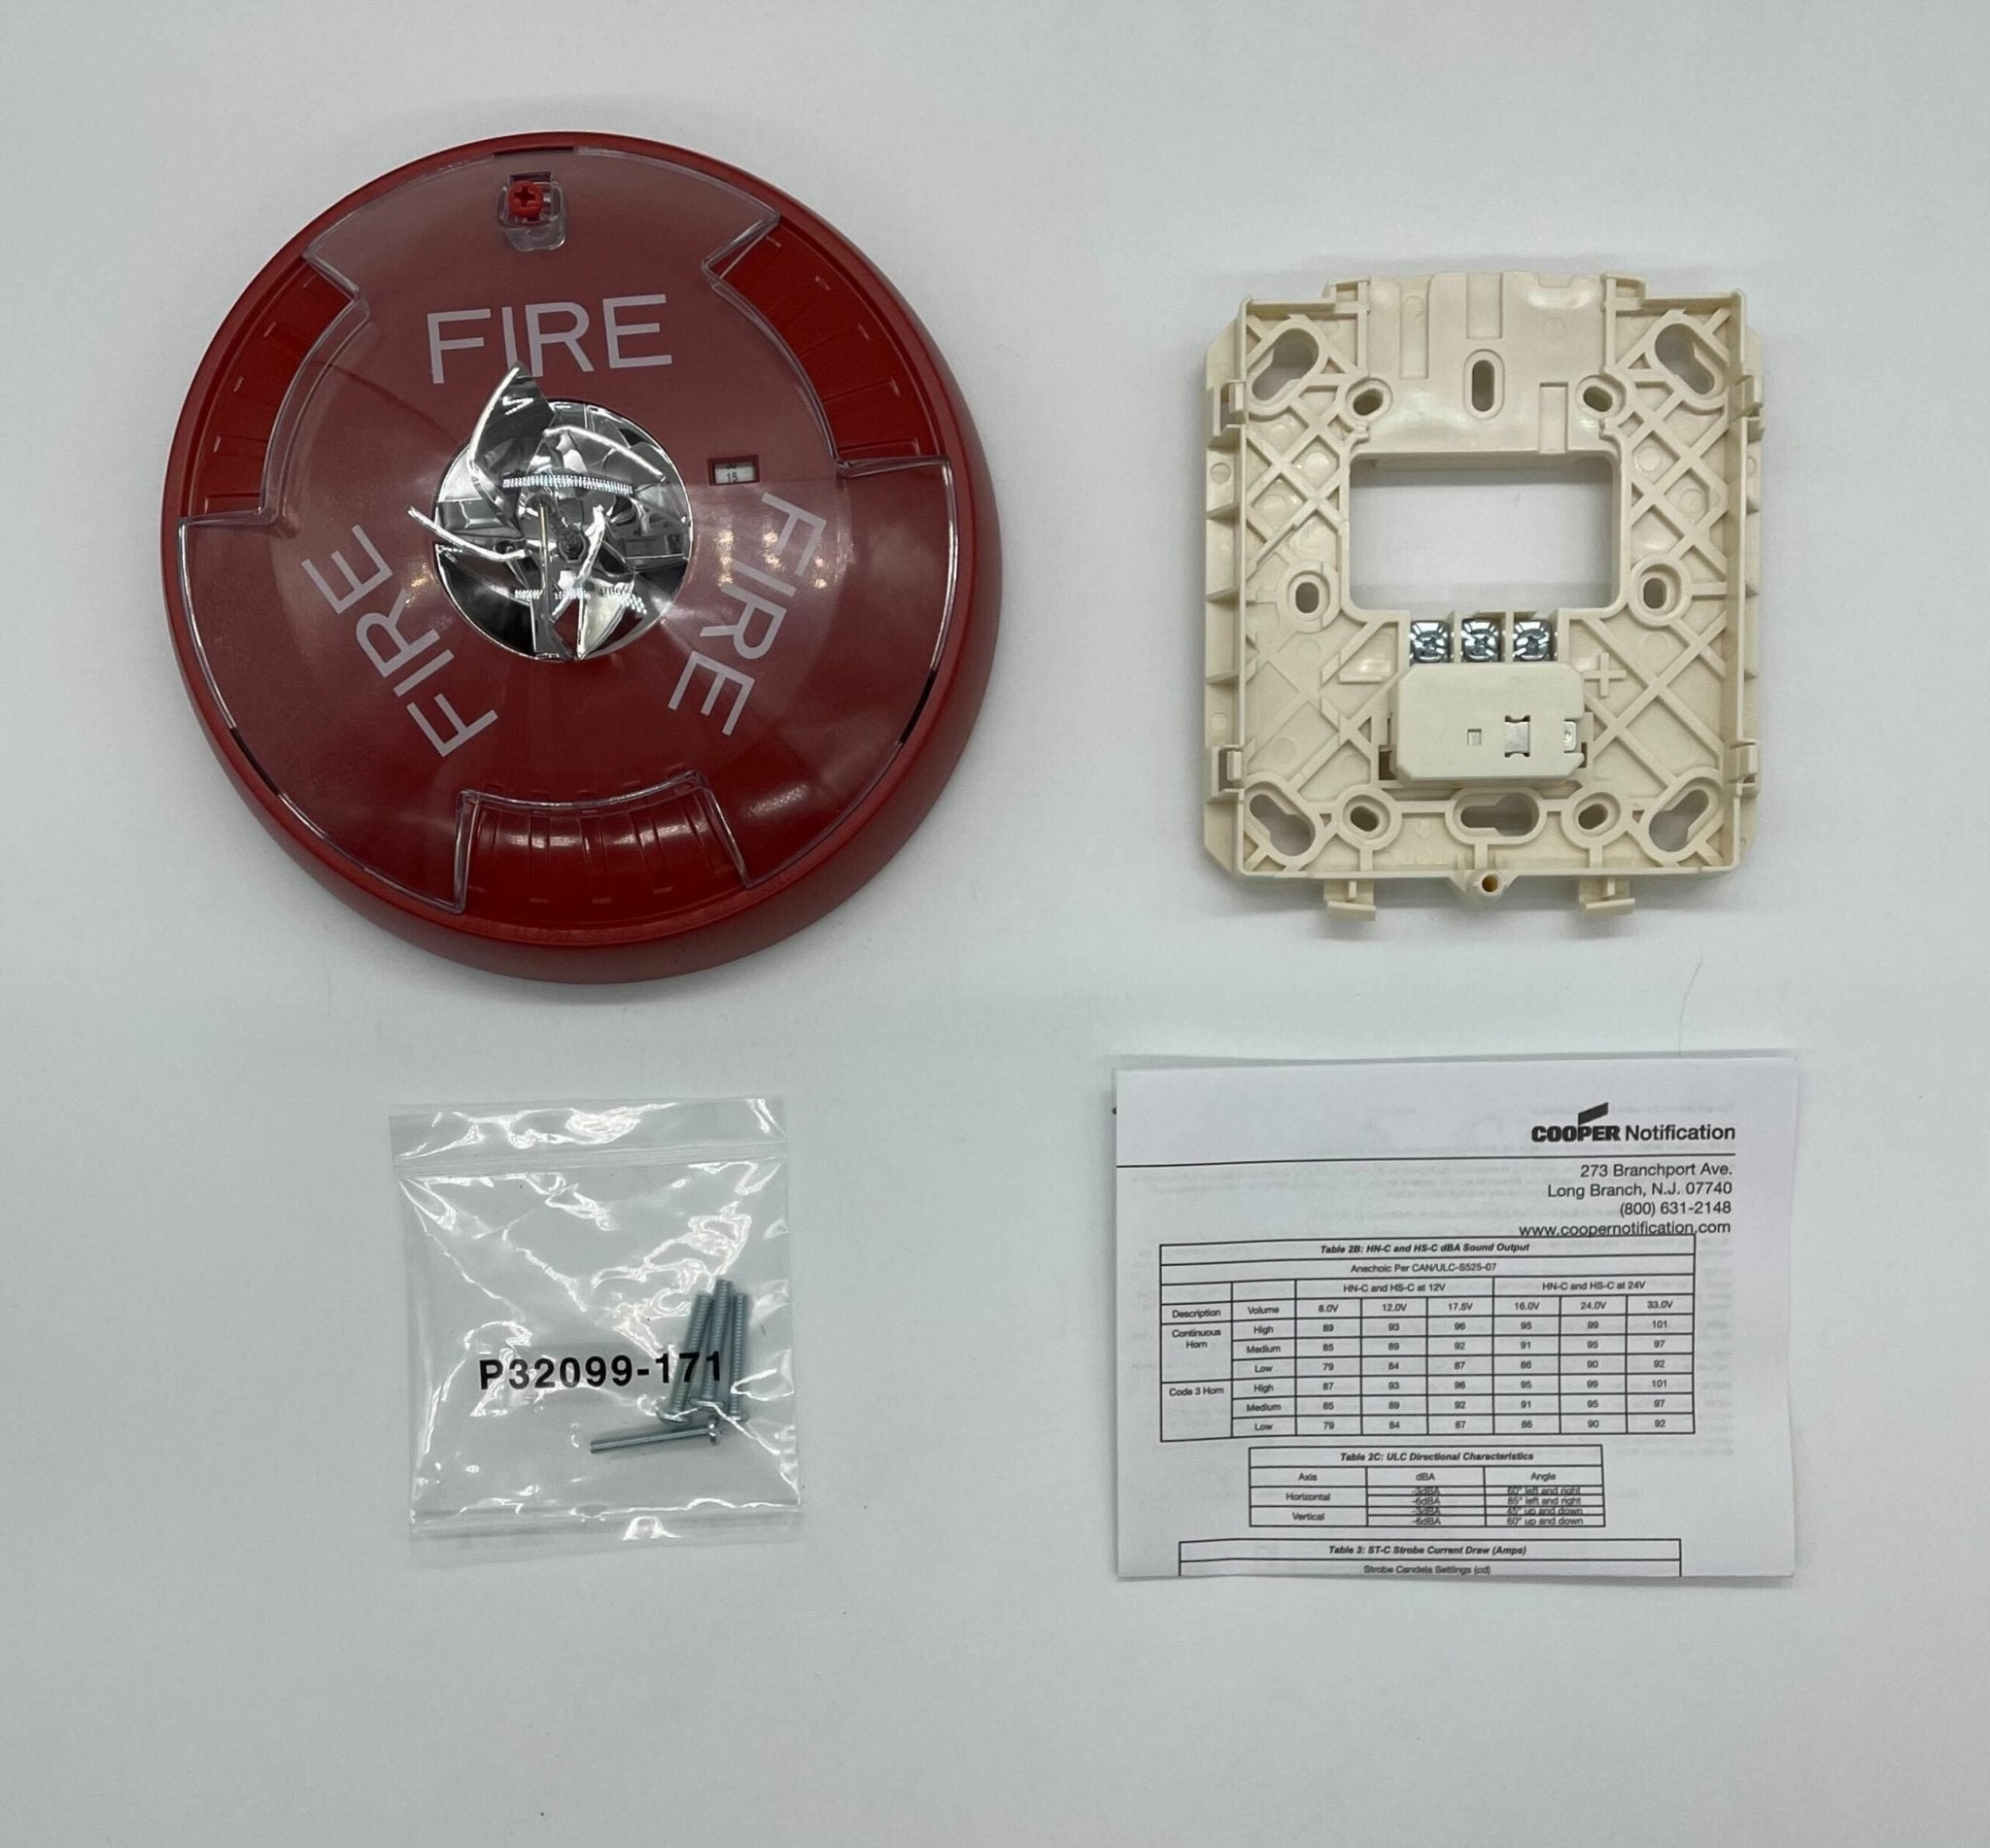 Wheelock STRC Exceder Strobe - The Fire Alarm Supplier